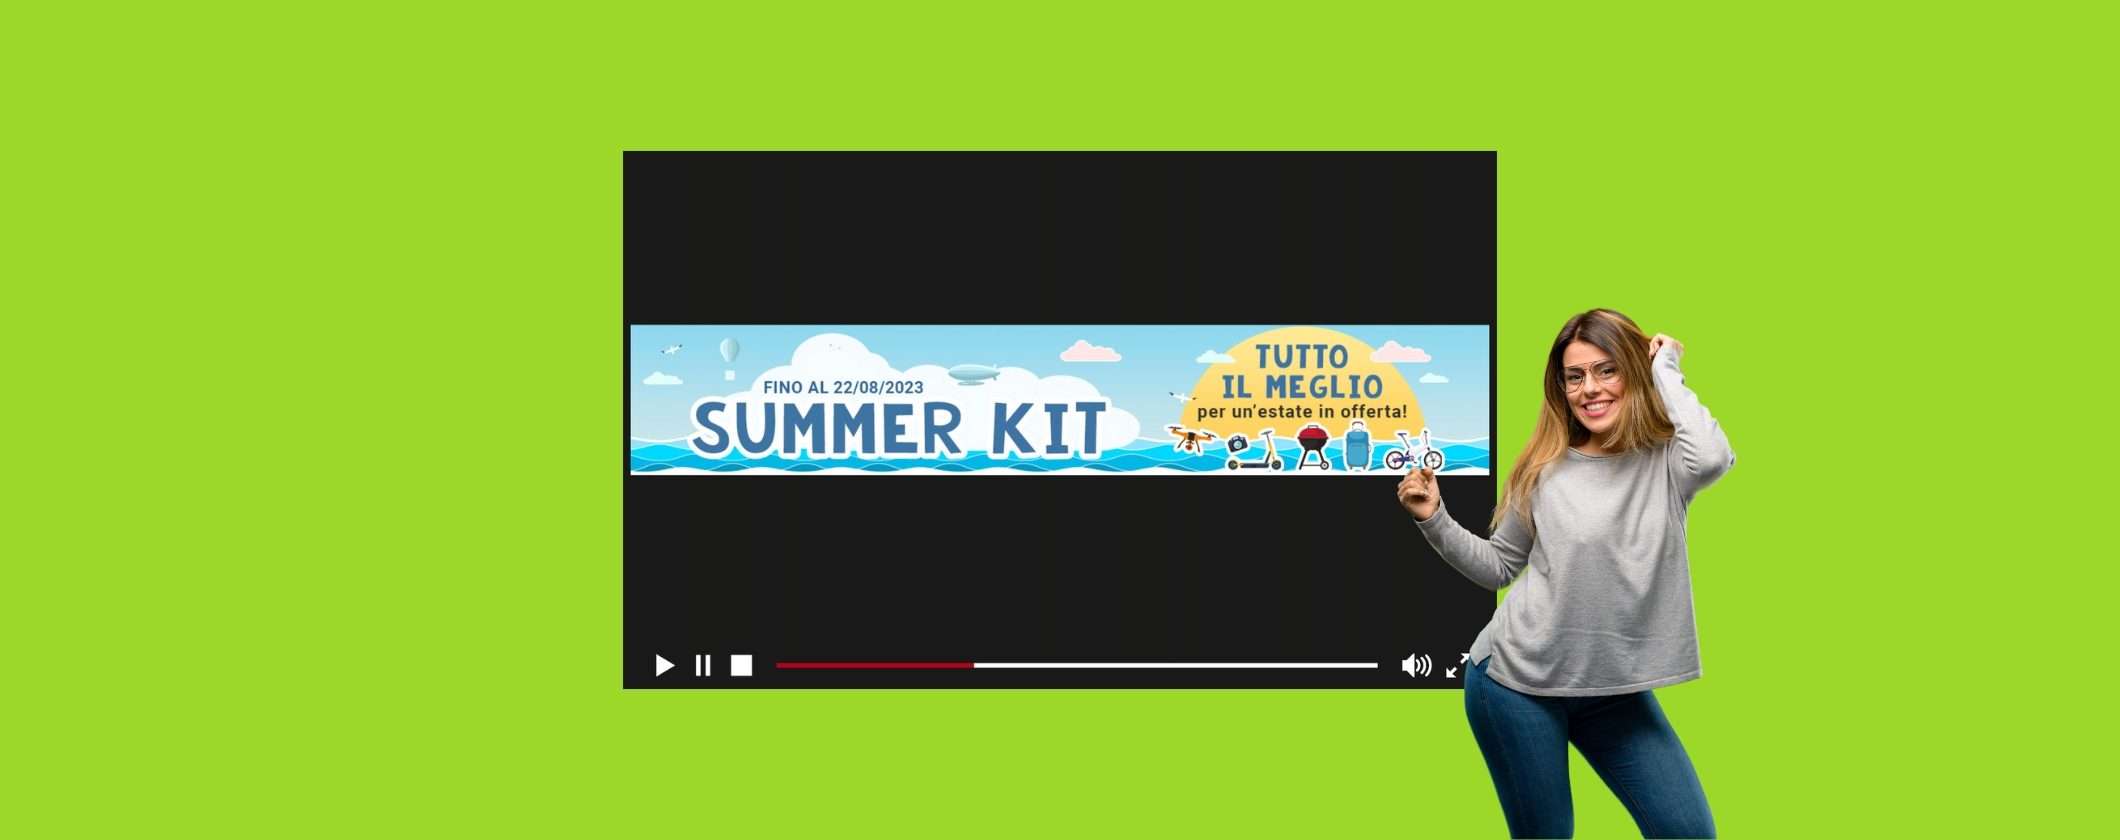 Monclick Summer Kit: il meglio per un'estate super conveniente